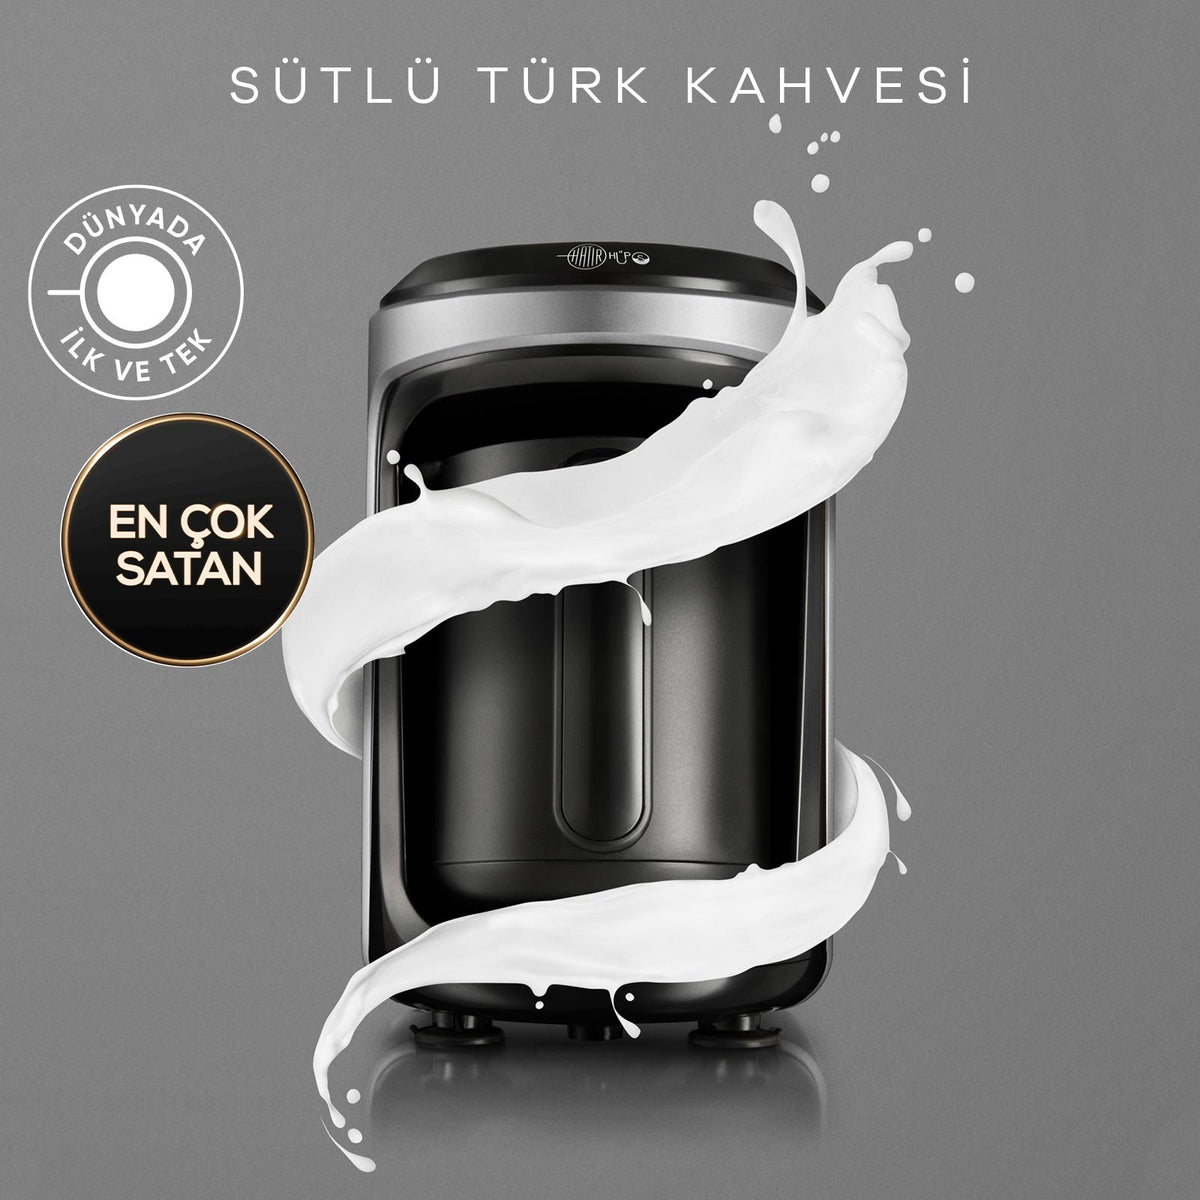 Karaca Hatır Hüps Sütlü Türk Kahvesi Makinesi Antrasit